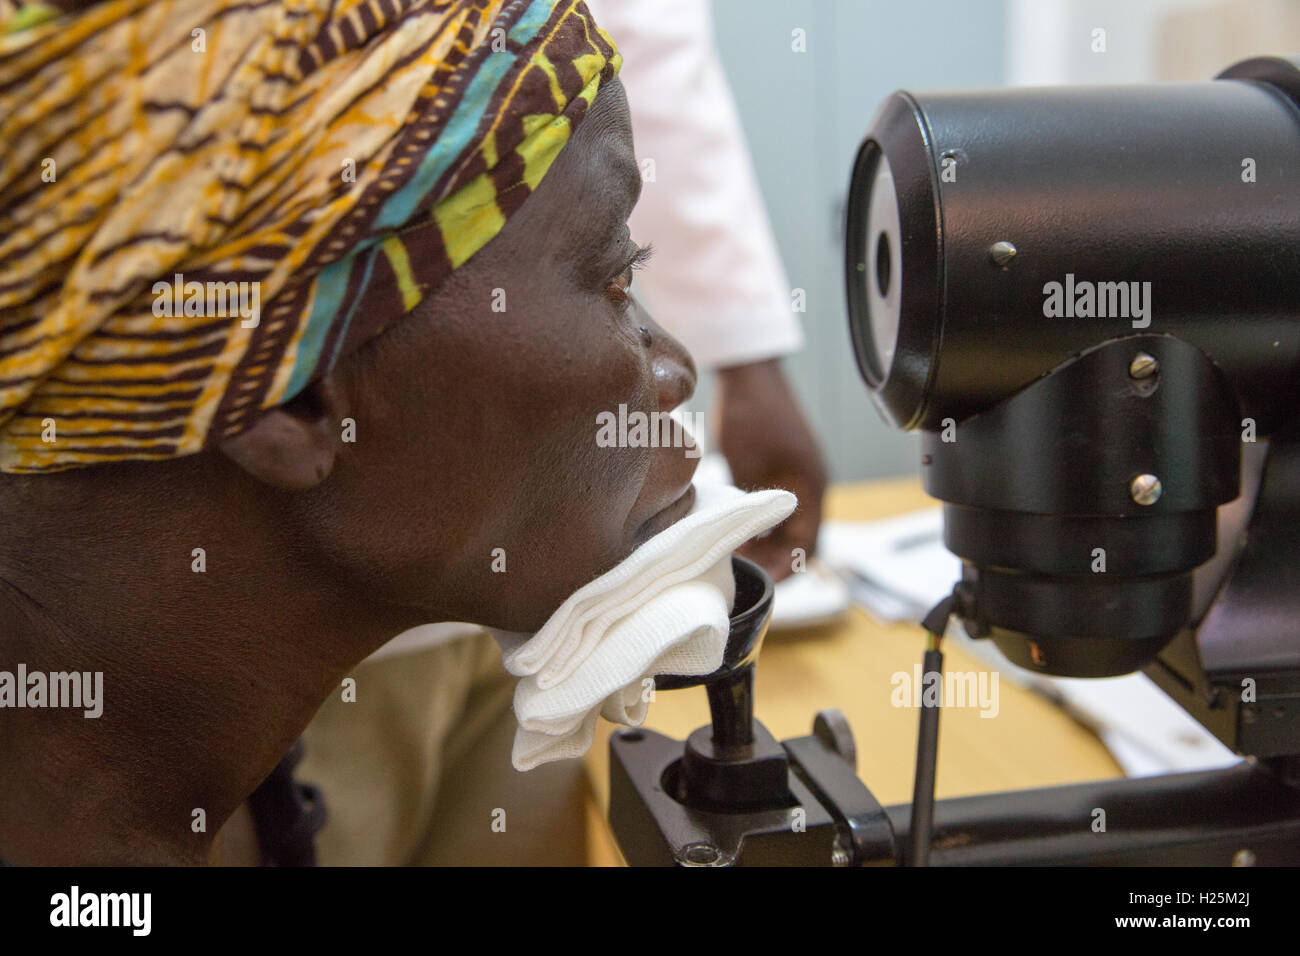 Ribaue Krankenhaus, Ribaue, Provinz Nampula, Mosambik, August 2015: Maria Albino hat ihre Augen überprüft und bei der Ankunft im Krankenhaus Ribaue in Vorbereitung auf ihren ersten Katarakt-Operation zur Wiederherstellung ihrer Blick gemessen.  Foto: Mike Goldwater Stockfoto